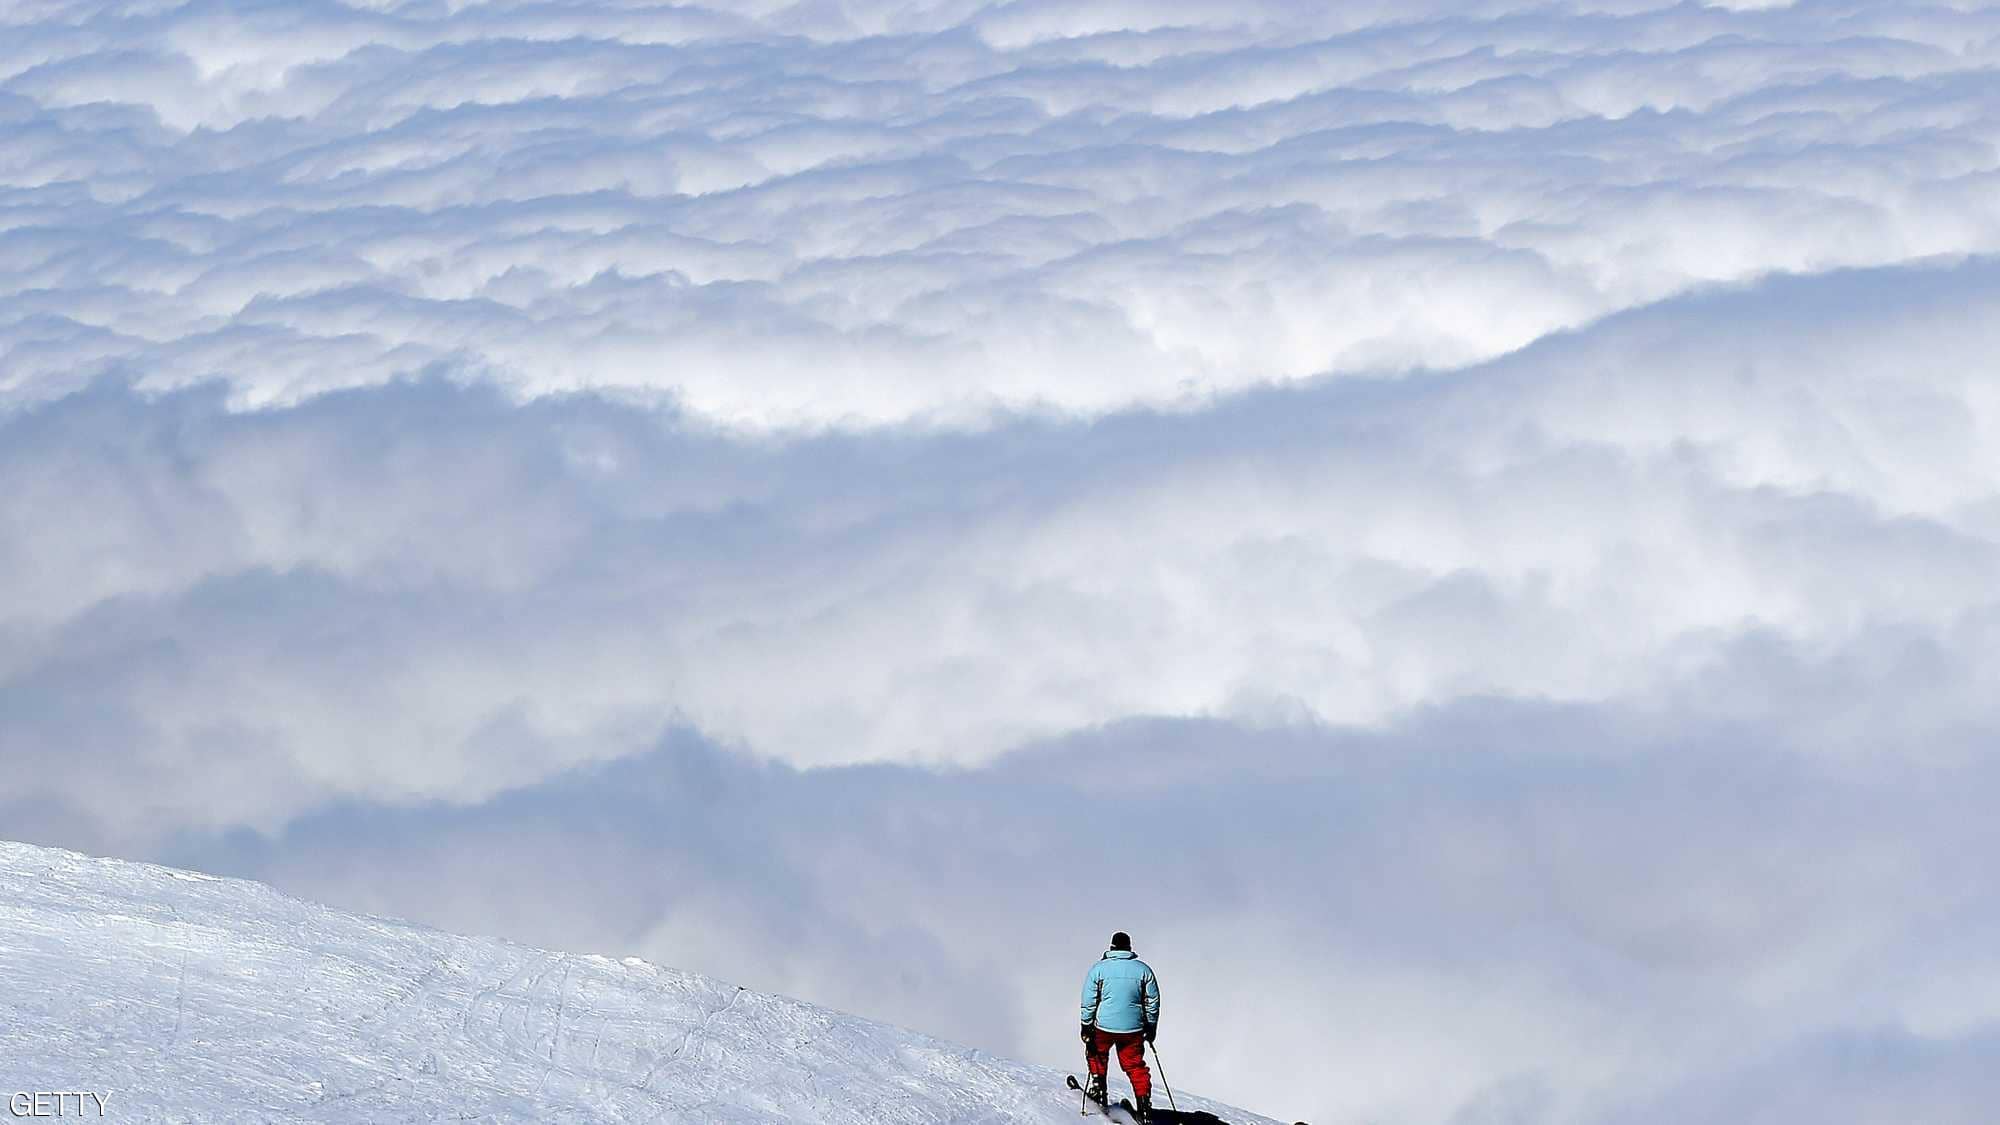 منتجع أوكايمدن للتزلج بجبال أطلس قبلة استجمامية لعشاق الثلوج